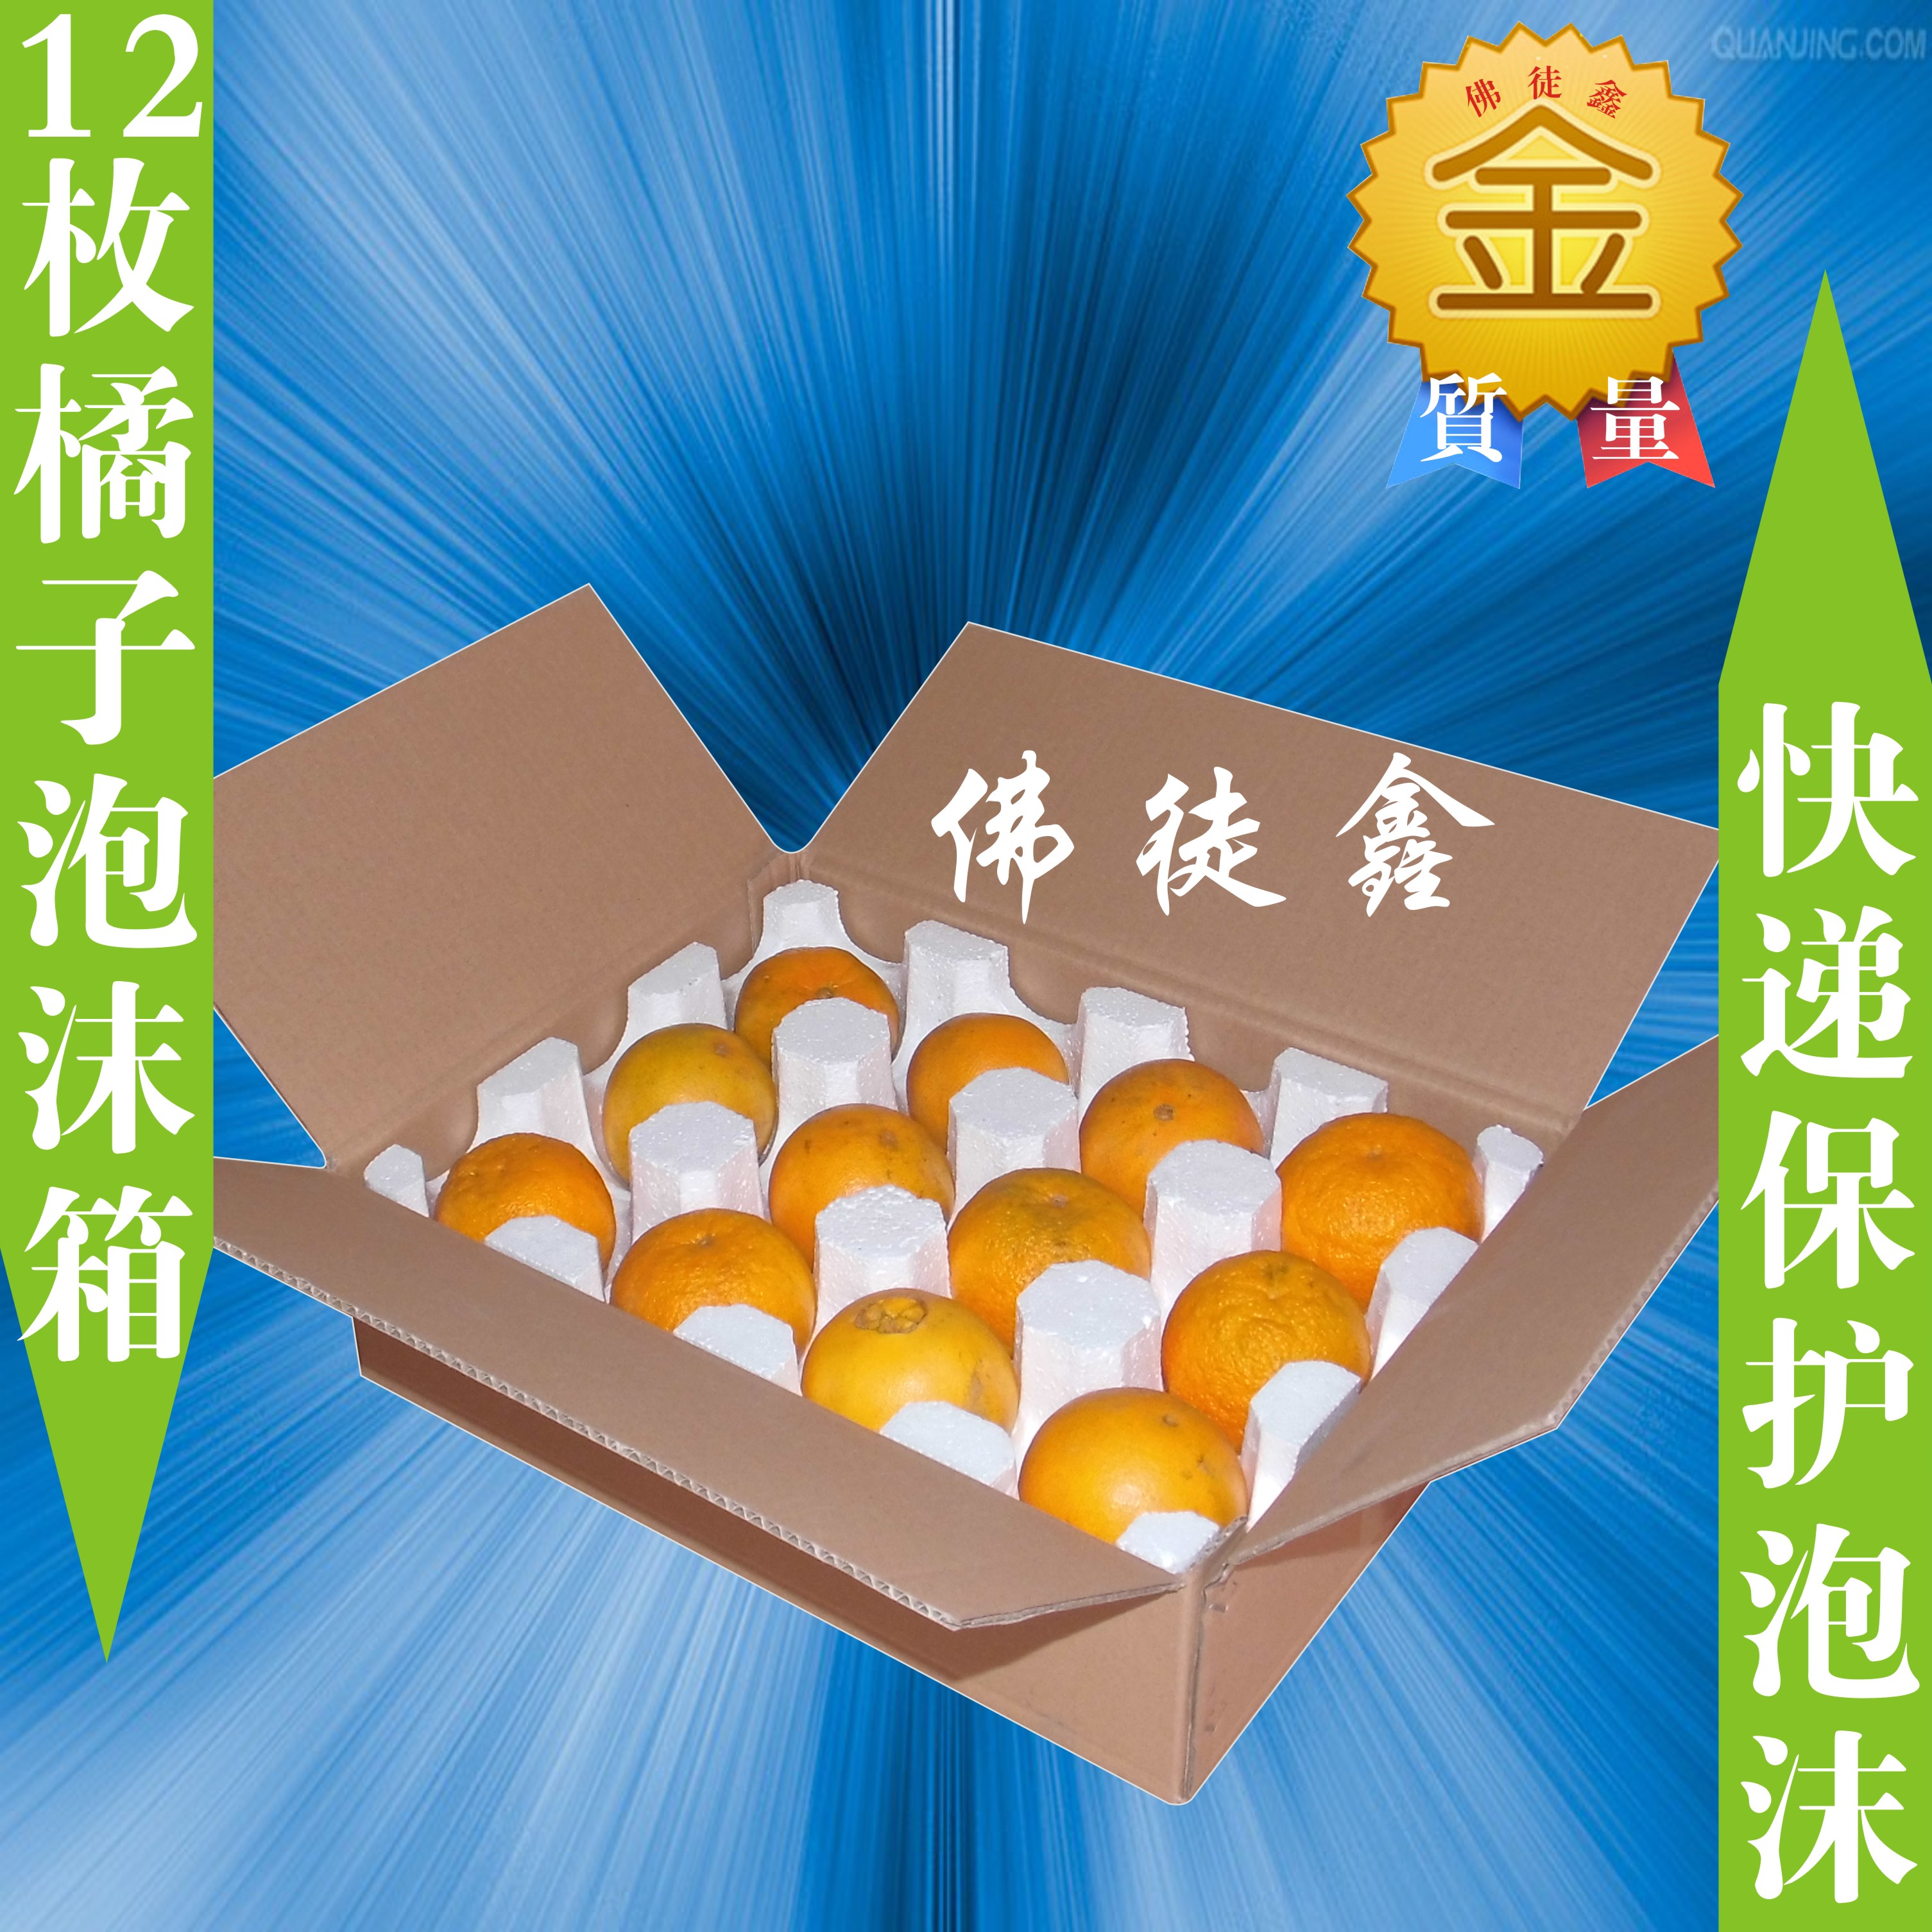 12枚苹果/橙子/不知火/梨子/甜宝/石榴/火龙果快递泡沫包装盒纸箱折扣优惠信息